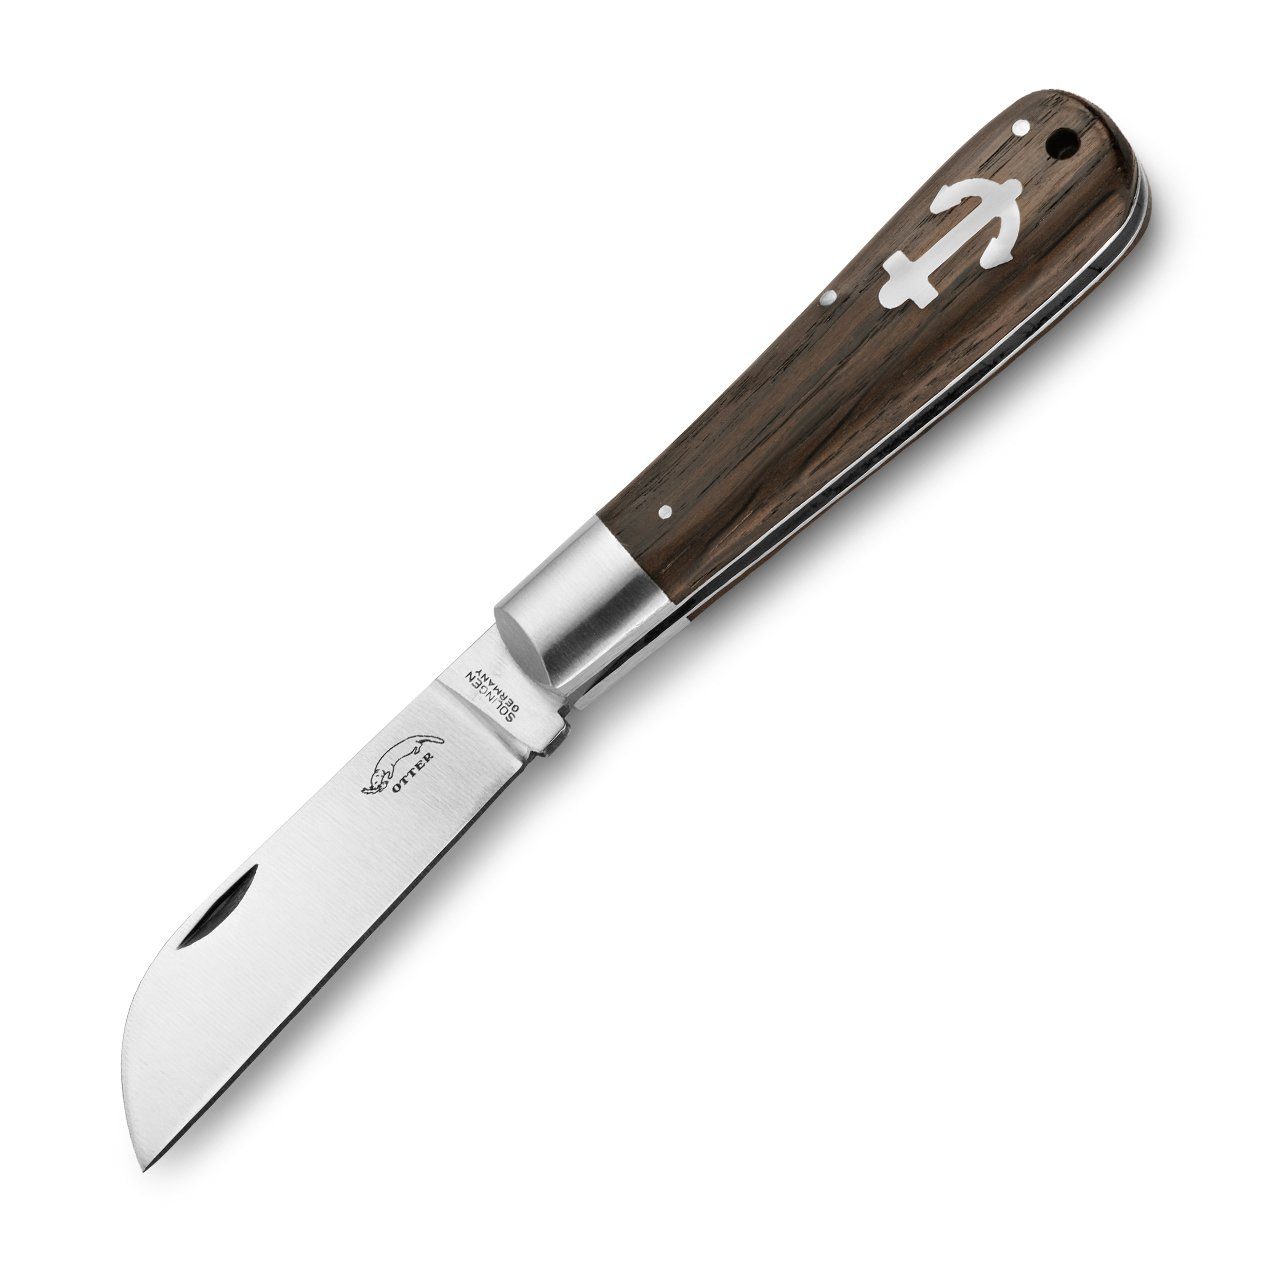 Otter Messer Taschenmesser Ankermesser klein Räuchereiche, Klinge Carbonstahl, Slipjoint